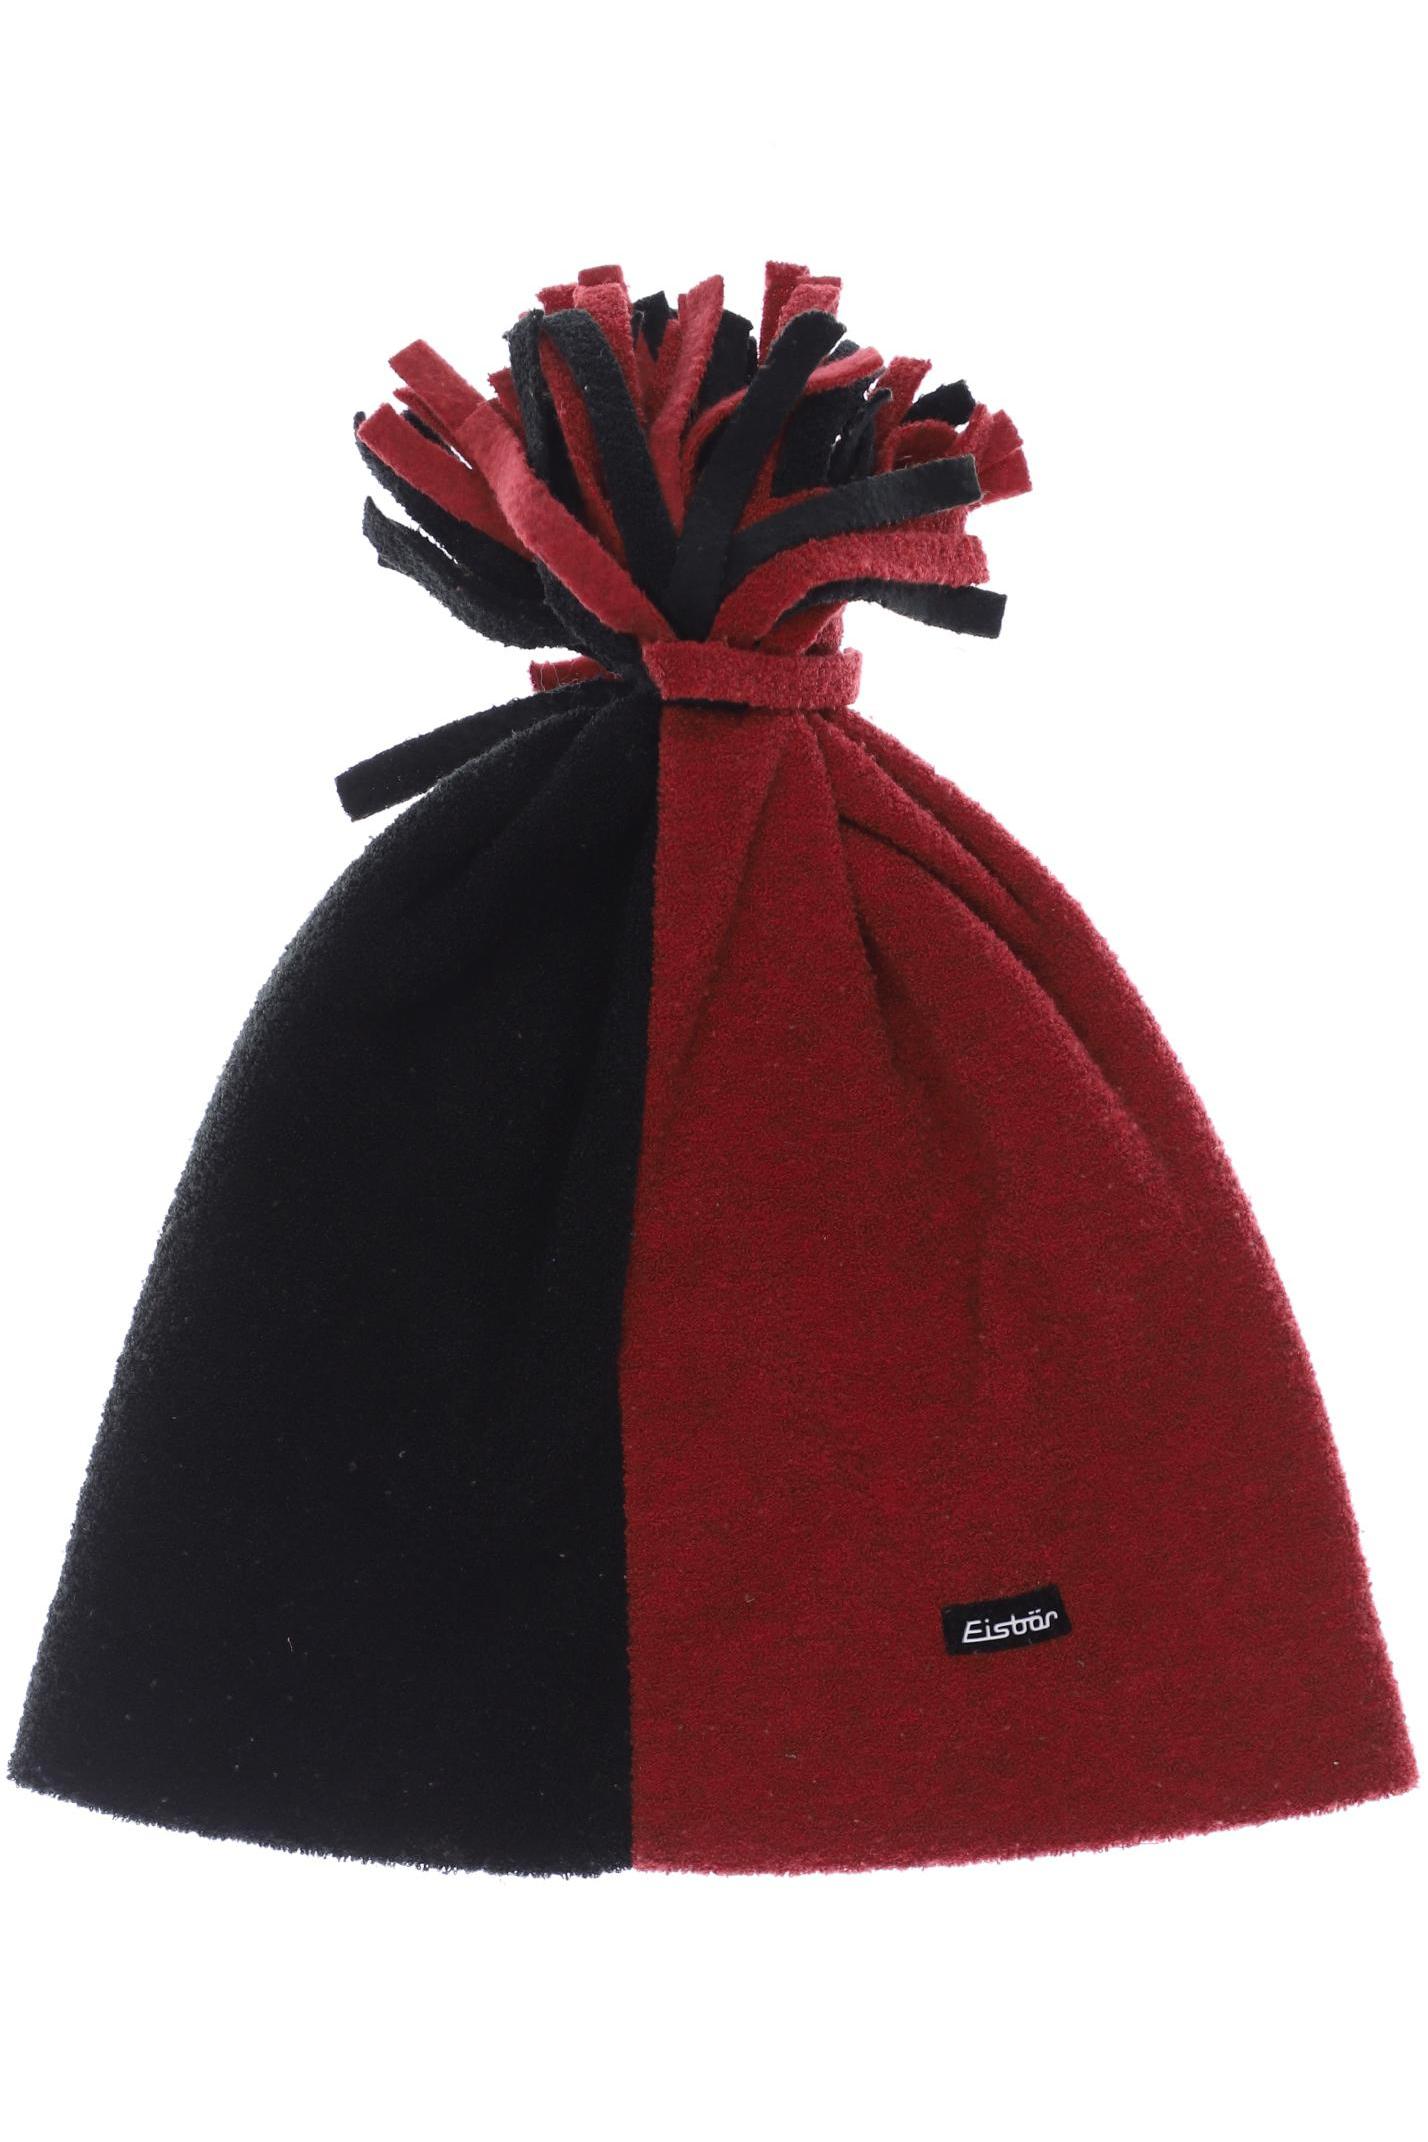 Eisbär Damen Hut/Mütze, rot von EISBÄR